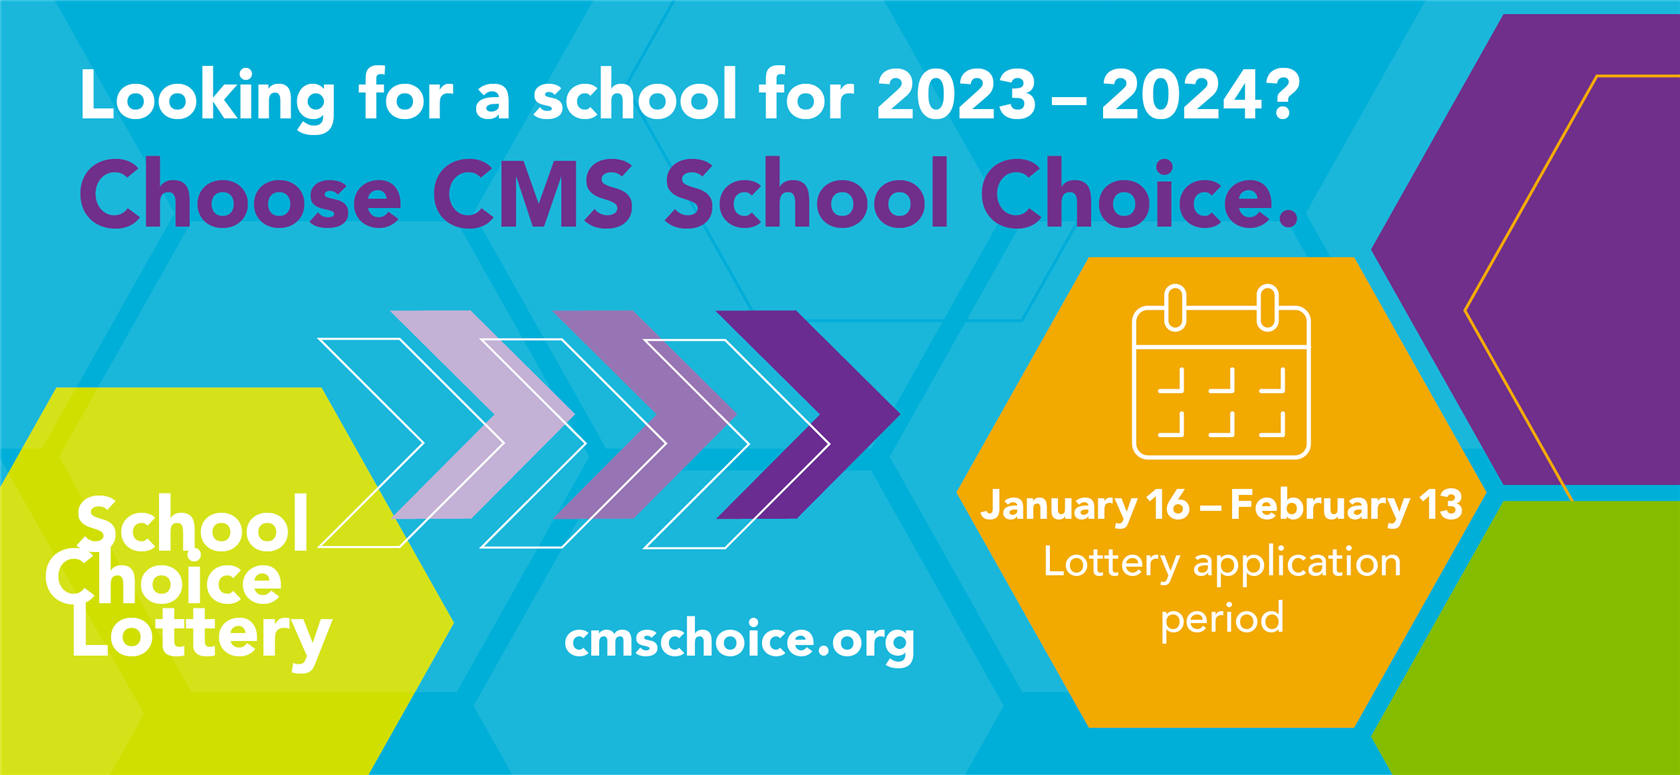  CMS School Choice Lottery